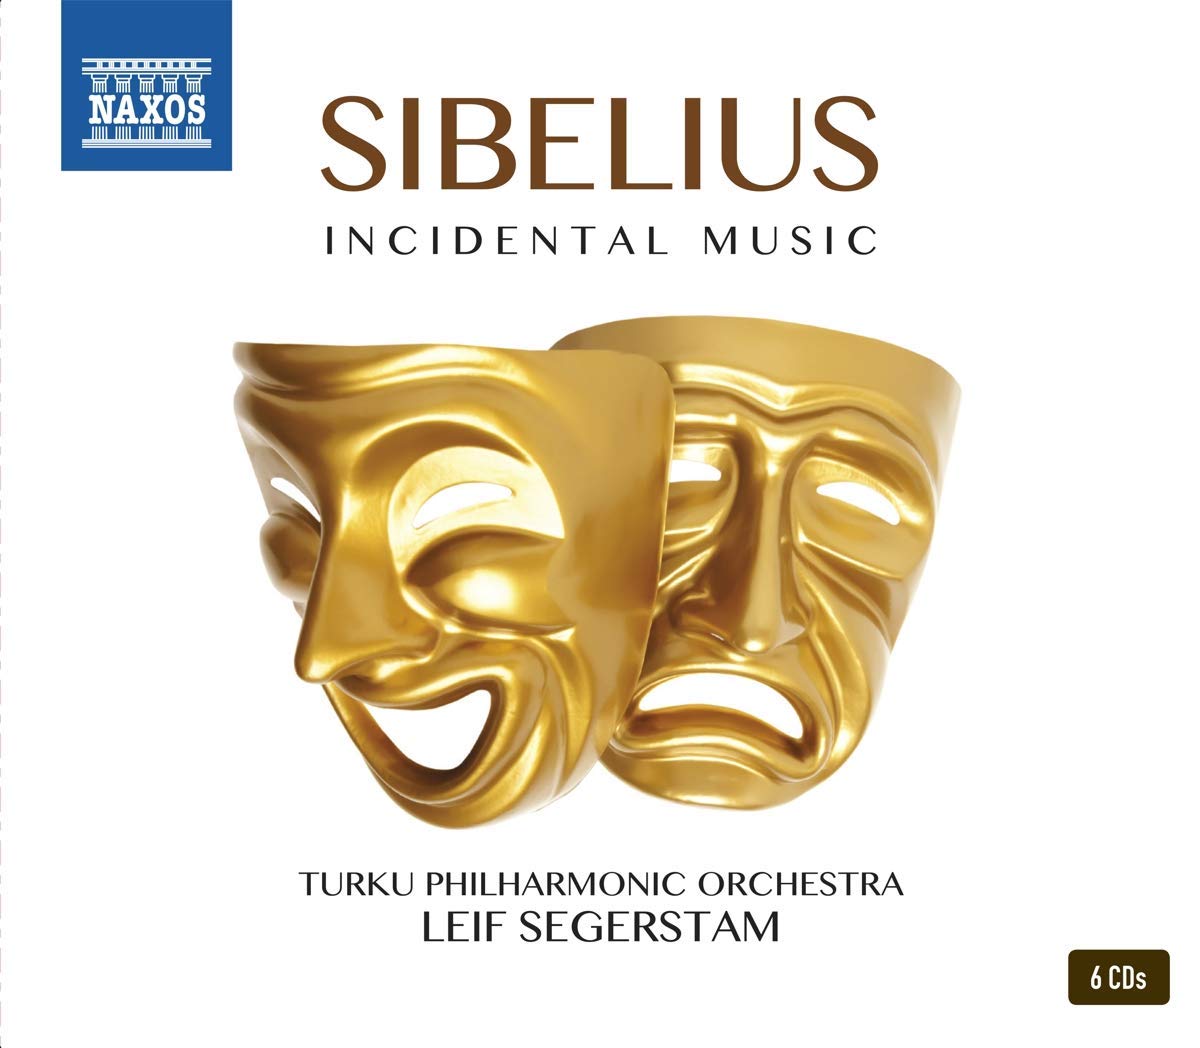 Audio Cd Jean Sibelius - Incidental Music (6 Cd) NUOVO SIGILLATO, EDIZIONE DEL 14/09/2018 SUBITO DISPONIBILE